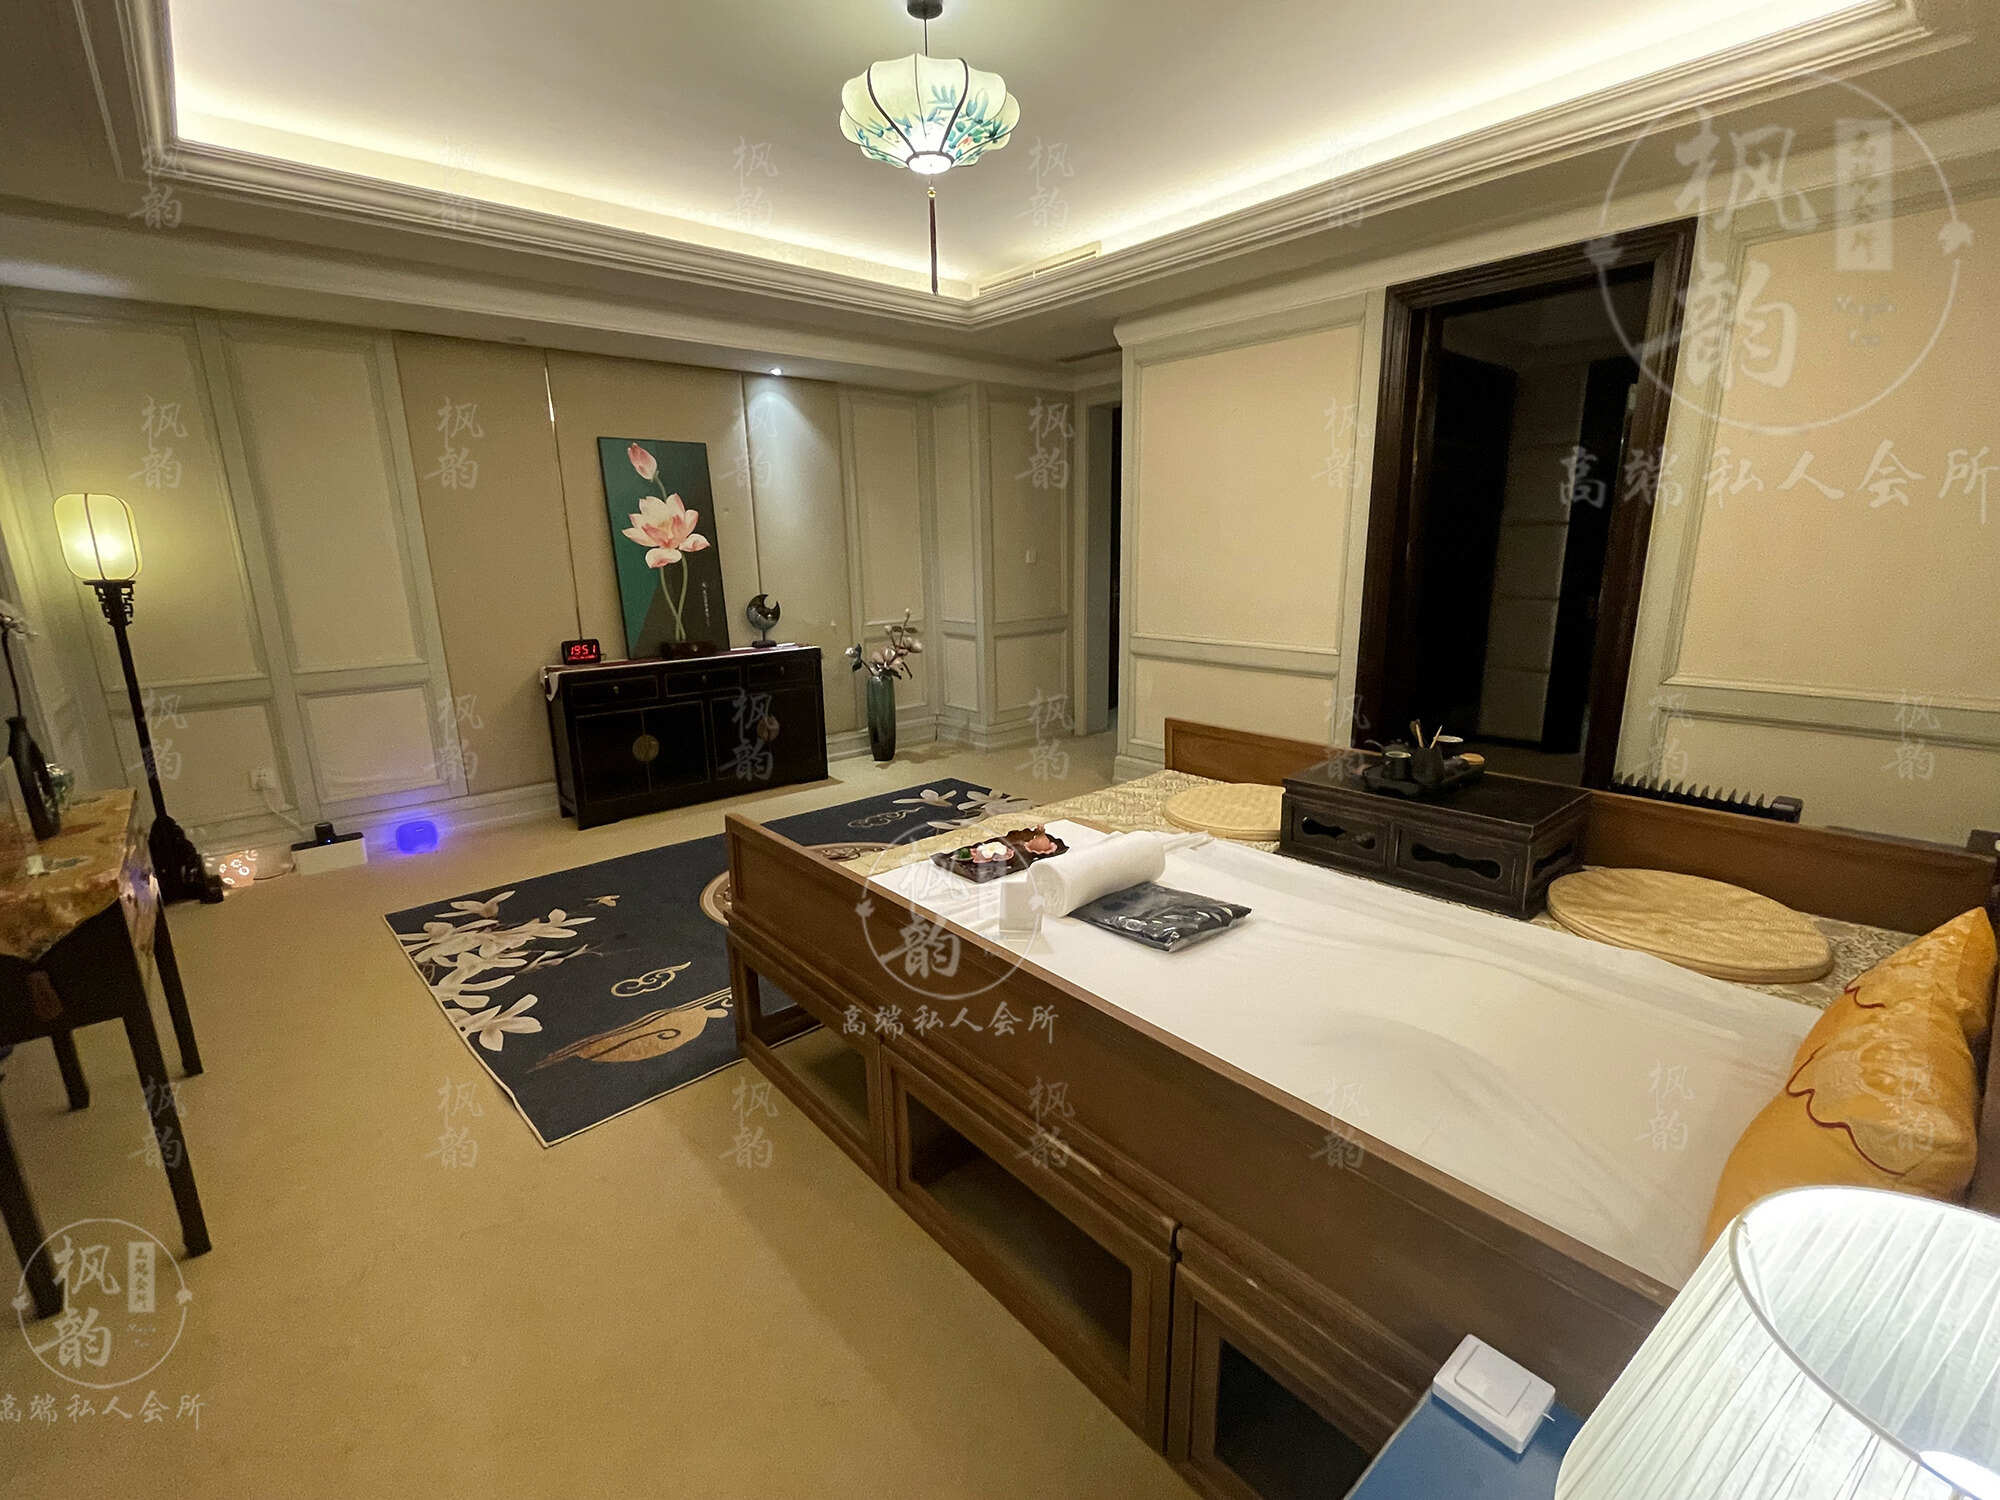 广东天津渔阳鼓楼人气优选沐足会馆房间也很干净，舒适的spa体验